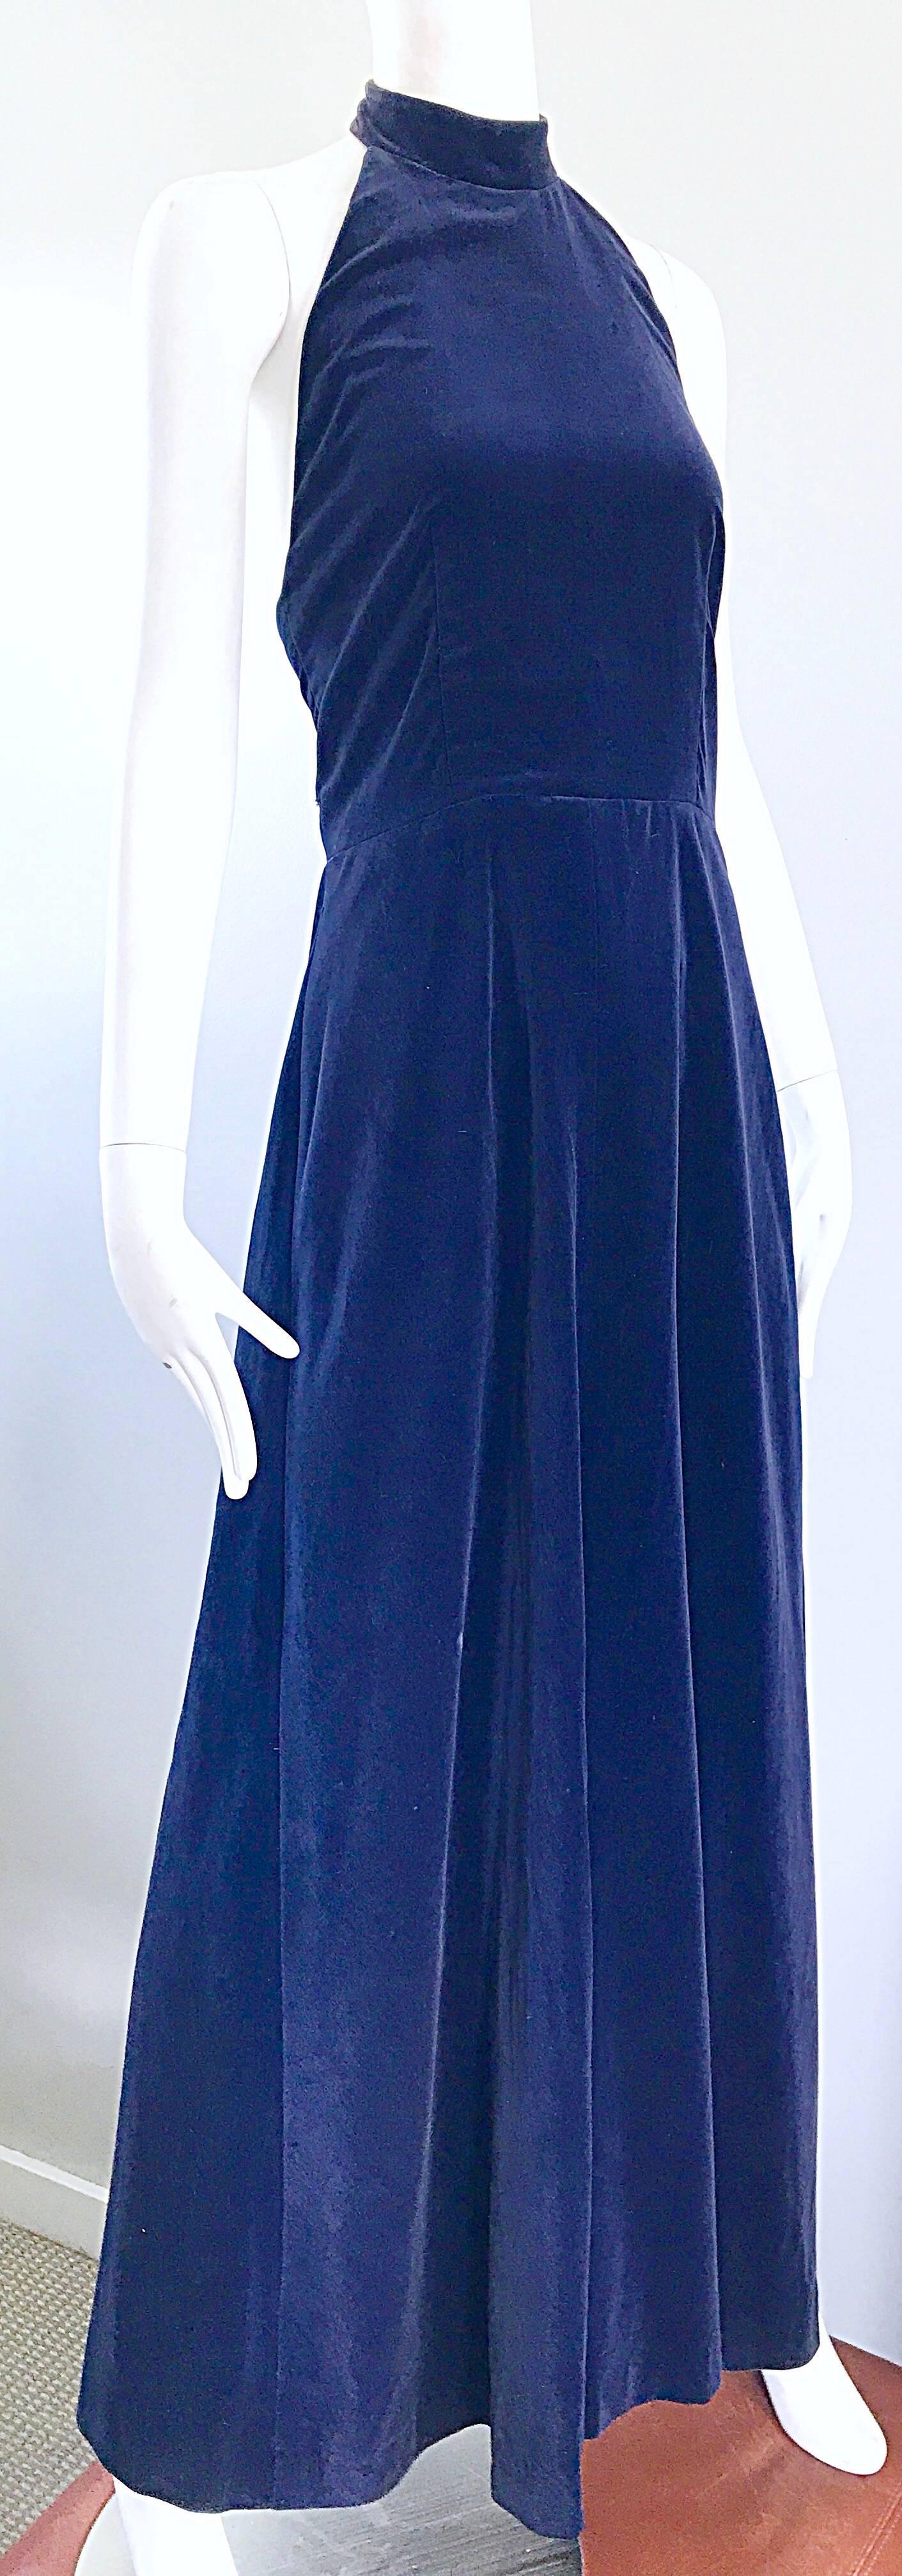 Women's Yves Saint Laurent 1970s Vintage Navy Blue Velvet High Neck Halter Gown 